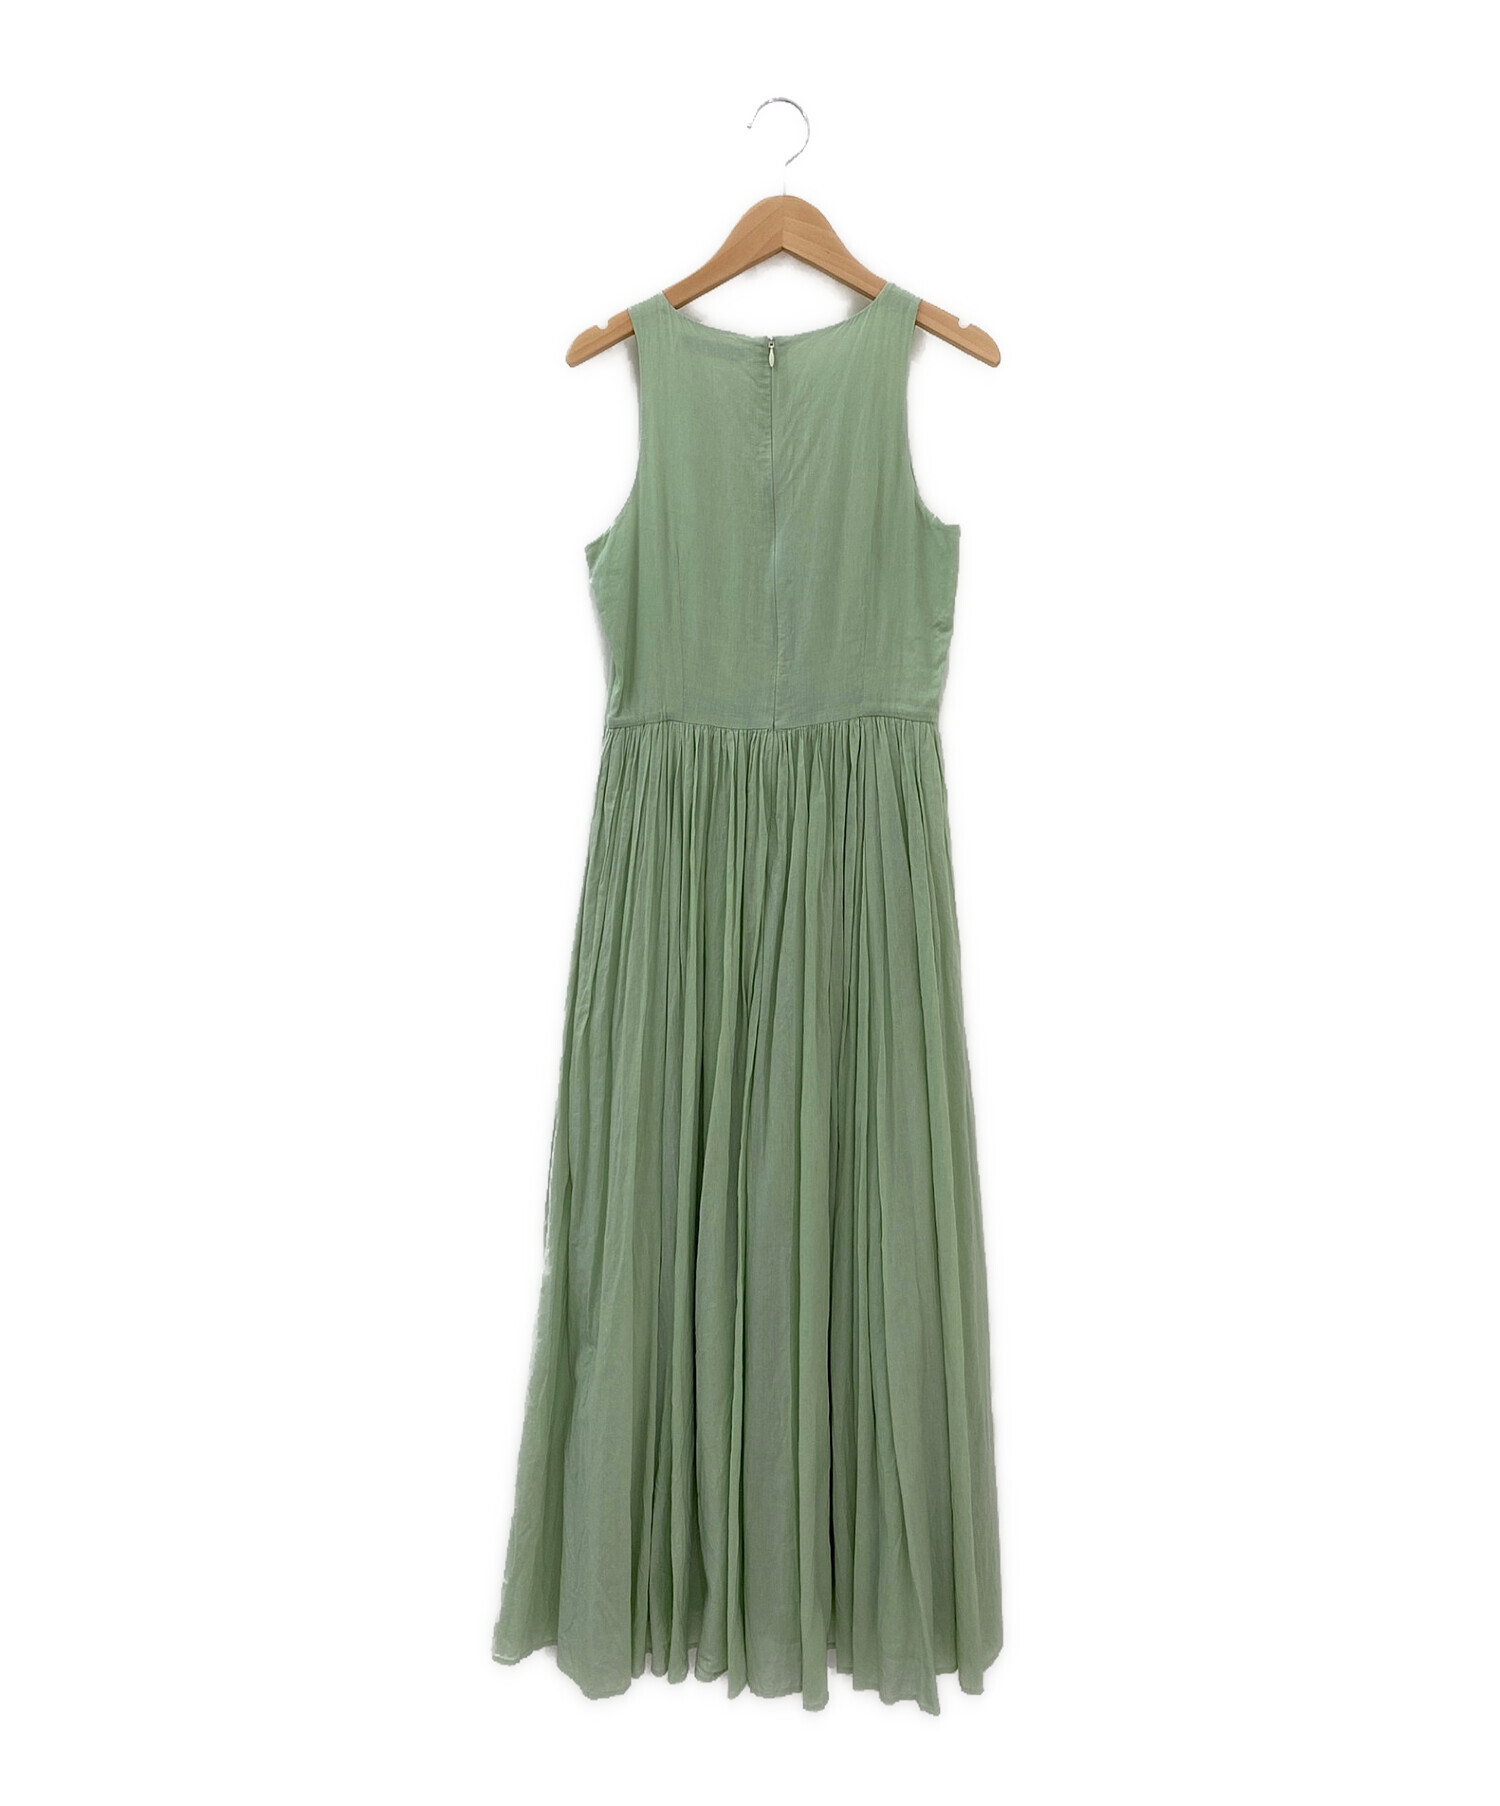 MARIHA (マリハ) 夏のレディのドレス グリーン サイズ:36